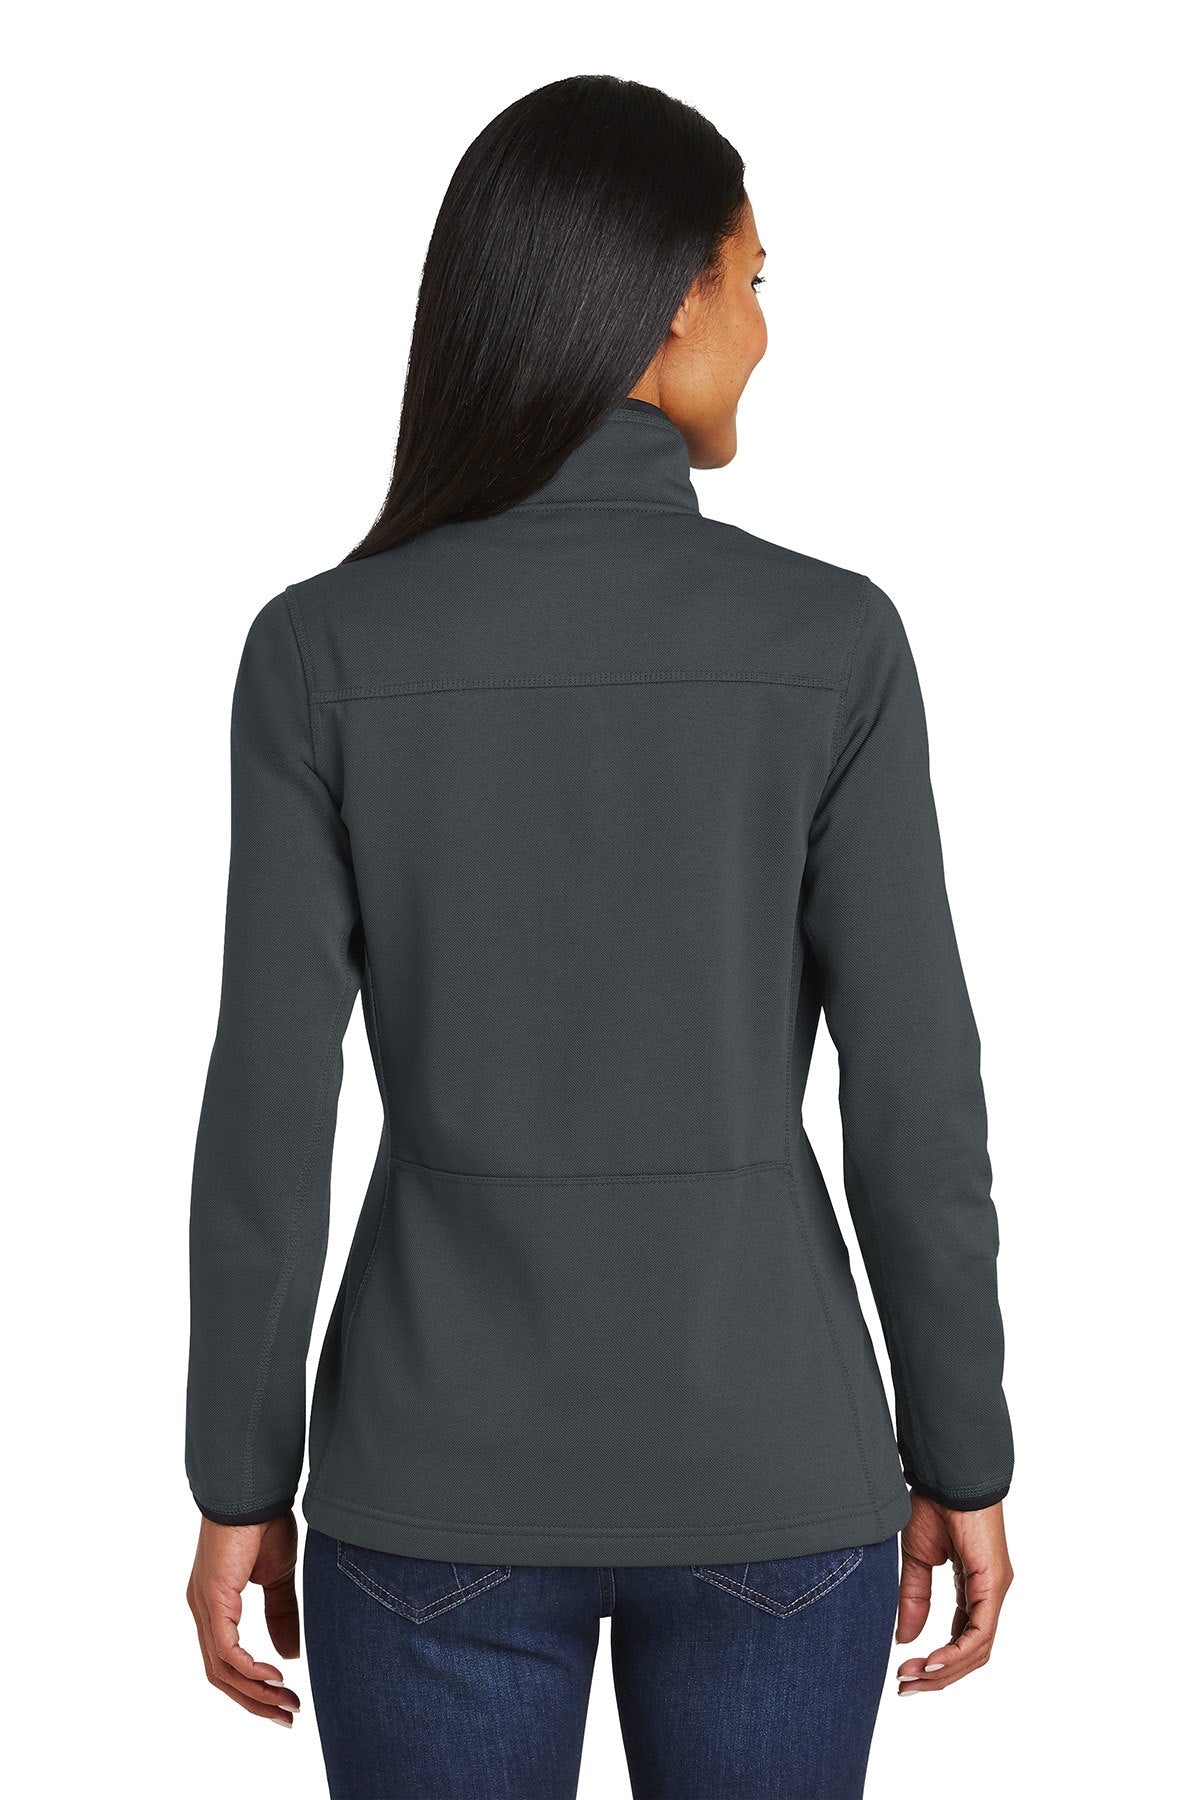 PA L222 Women's Pique Fleece Jacket Graphite